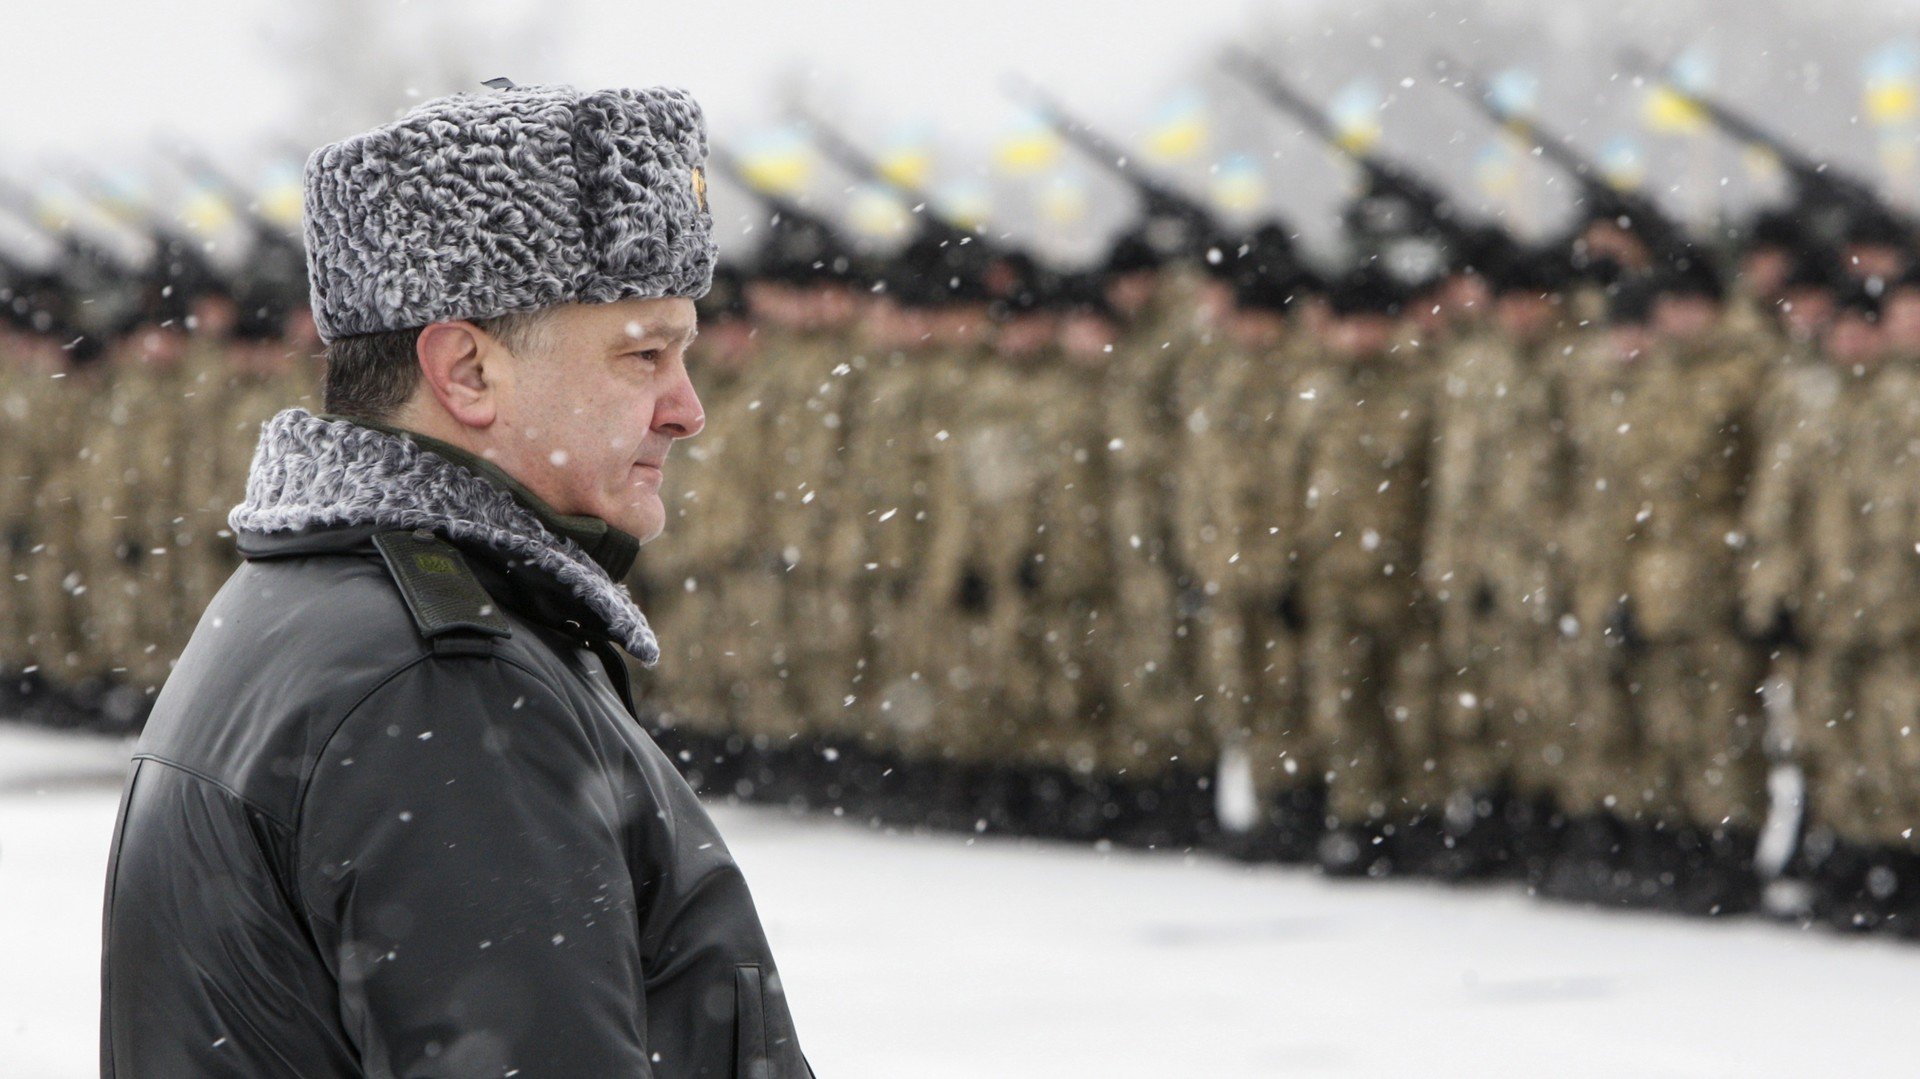 Ukraine : les députés veulent que l’ONU, l’OTAN et l’APCE qualifient la Russie d’ « agresseur »